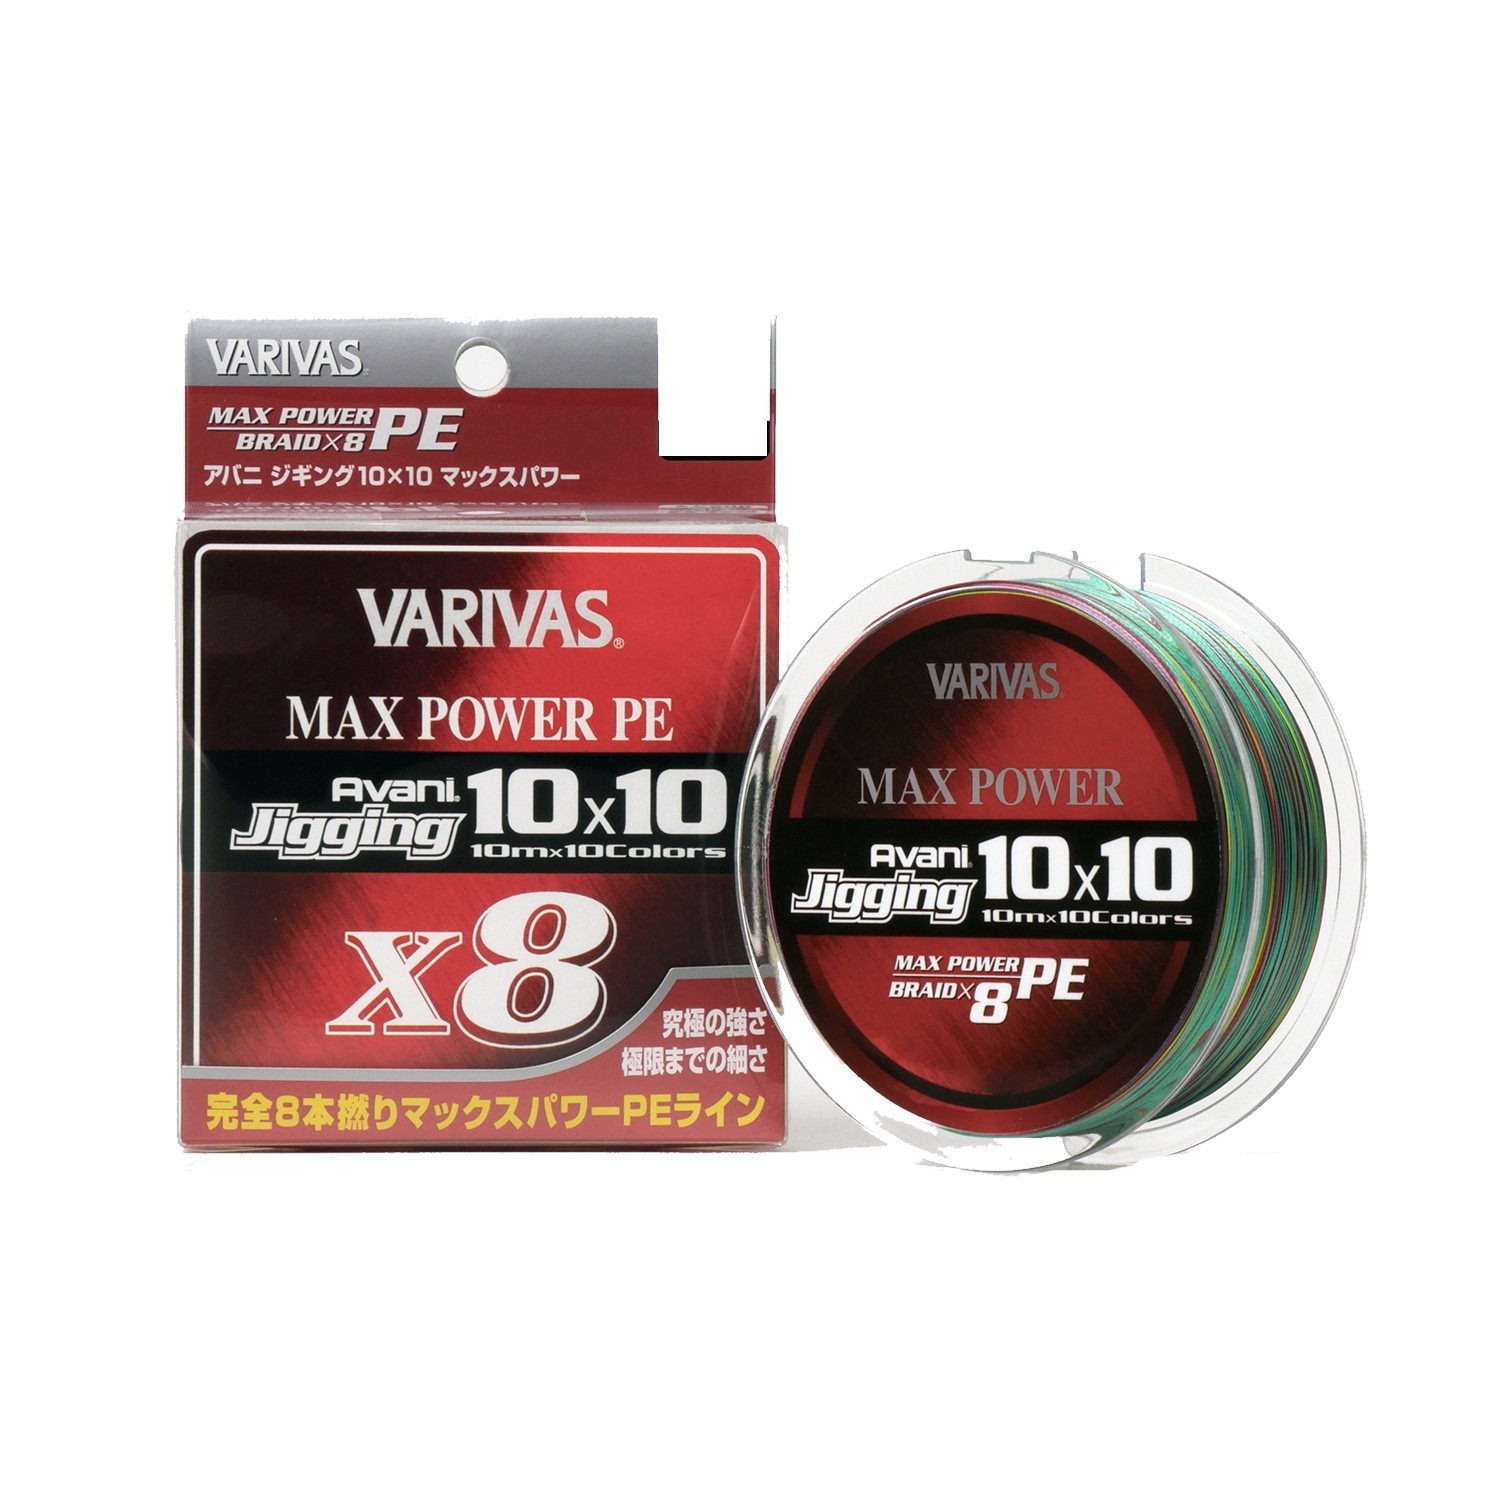 Шнур Varivas Avani Jigging 10x10 Max Power PE X8 200м PE 1.5 - фото 1